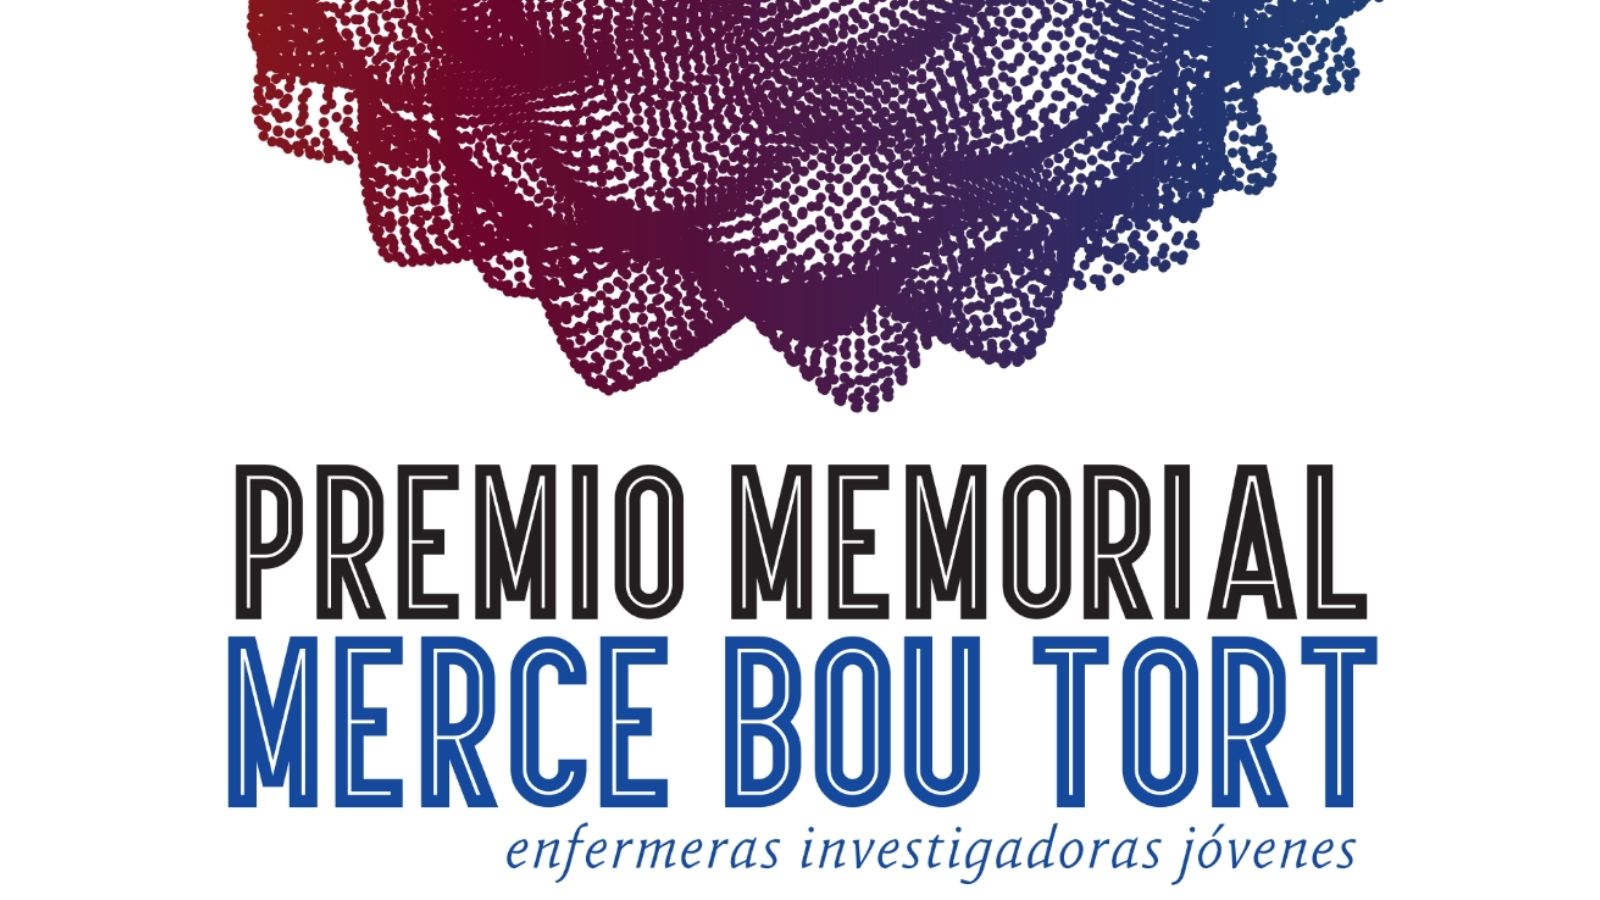 Premio Memorial Mercè Bou Tort enfermeras investigadoras jóvenes